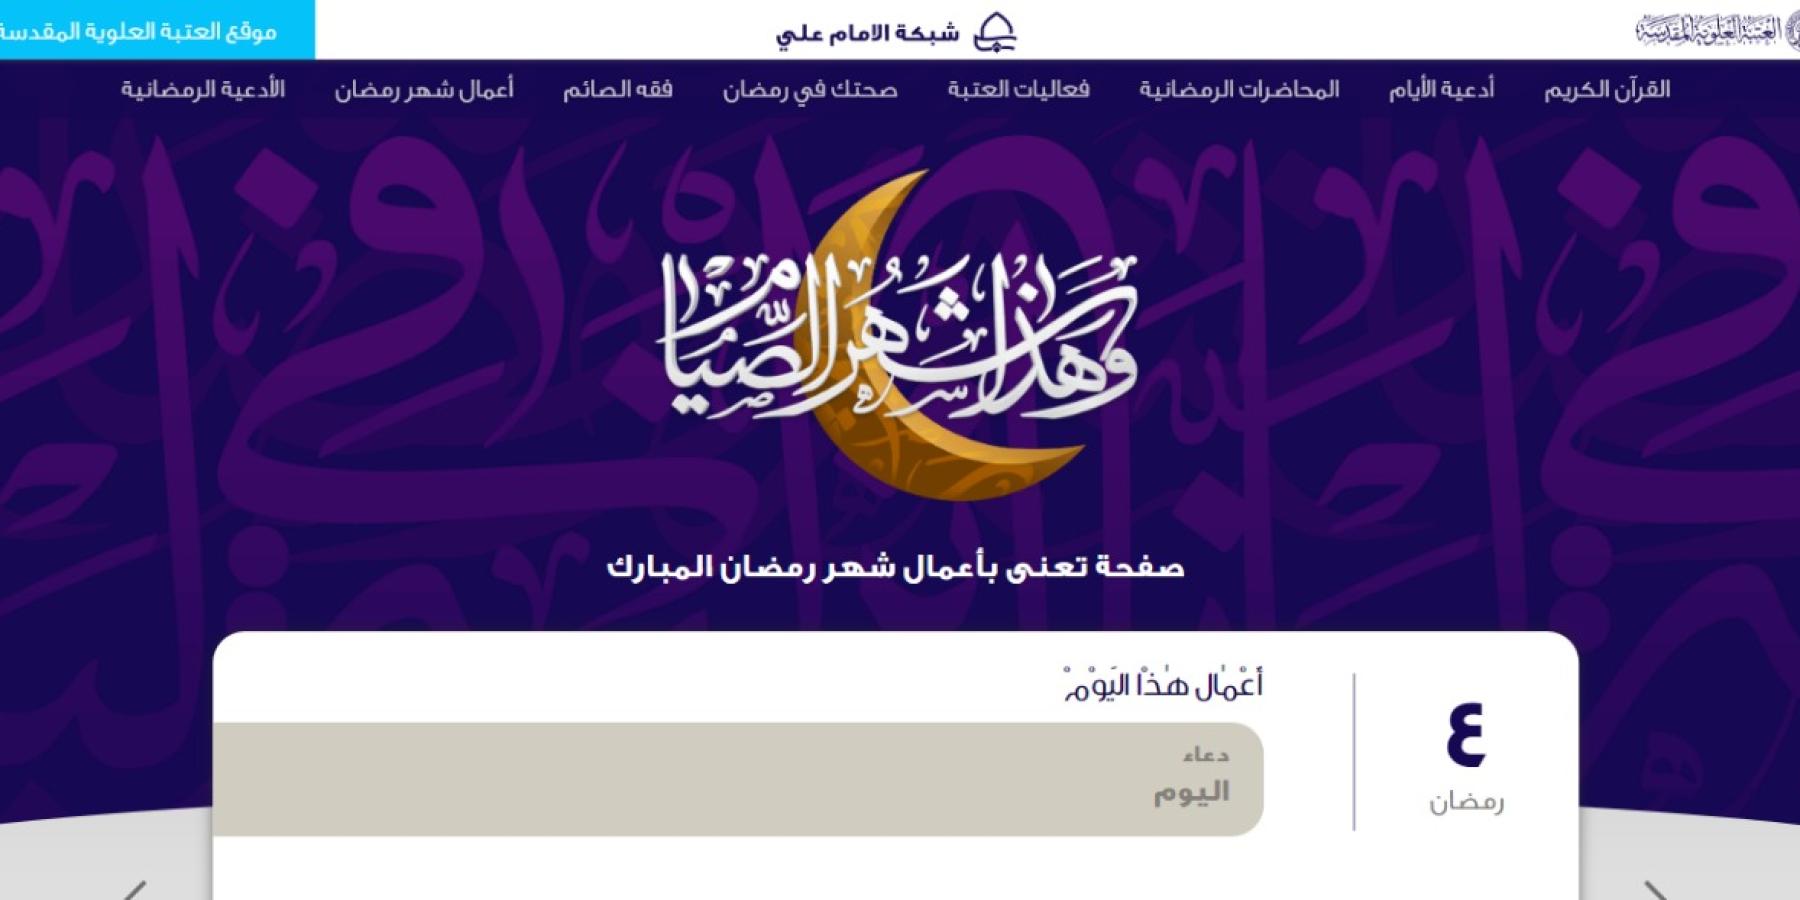 تكنولوجيا المعلومات في العتبة العلوية تصدر صفحة تقنية معنية بالأعمال العبادية في شهر رمضان المبارك